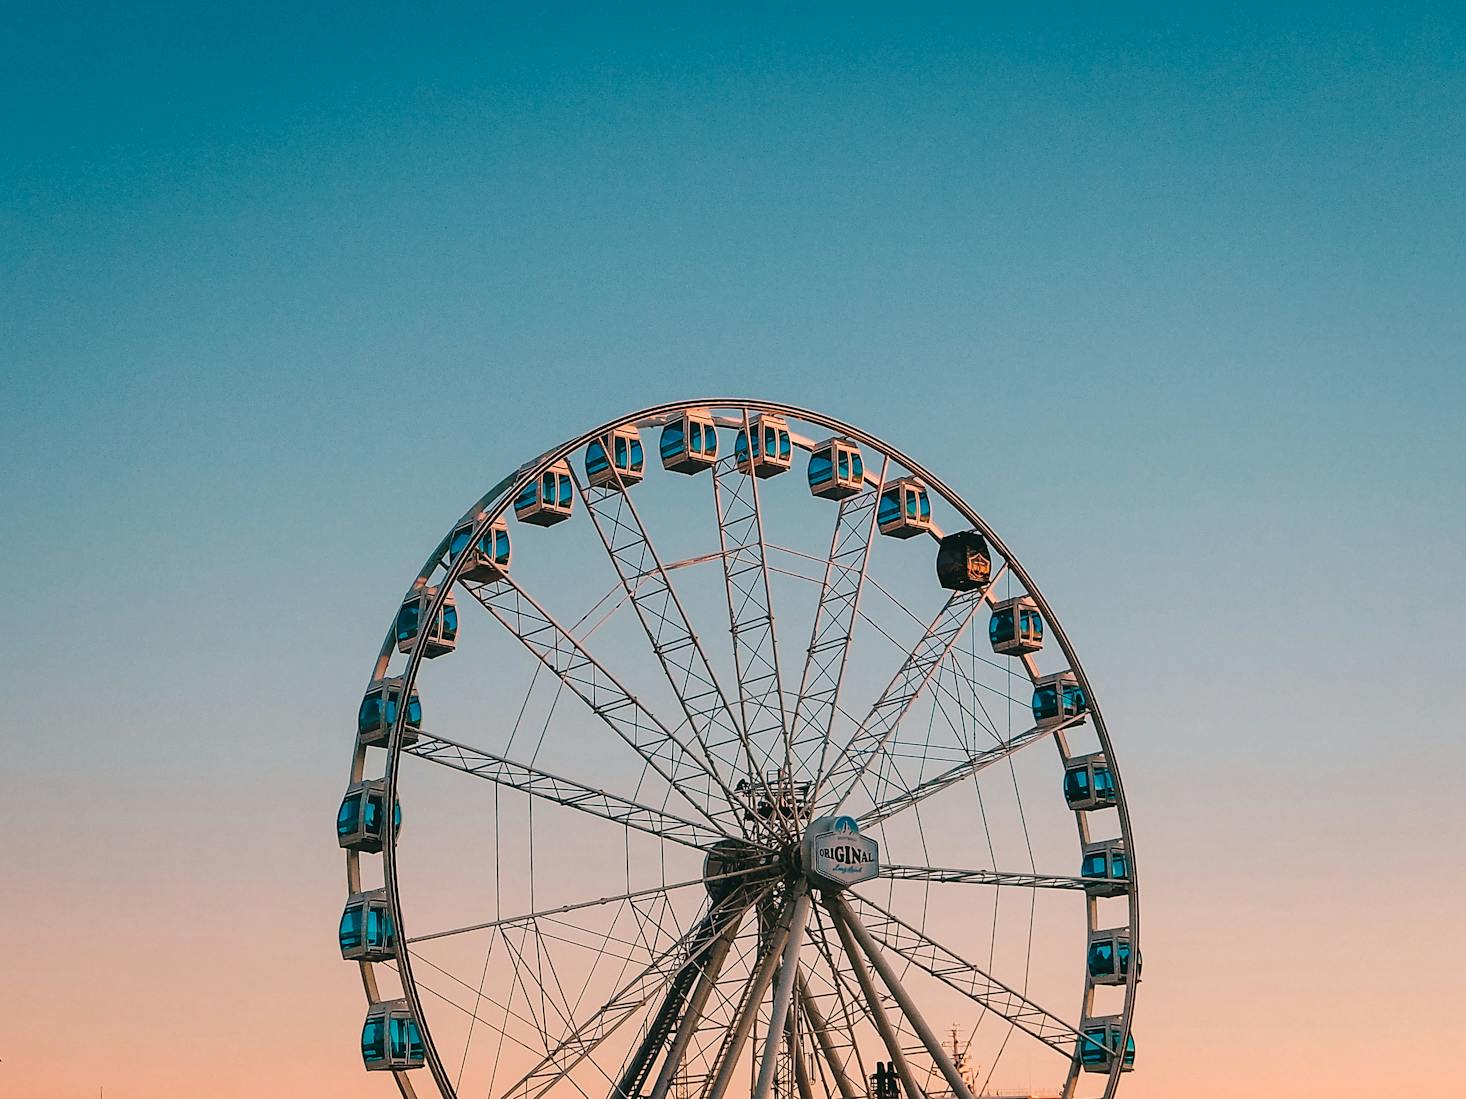 SkyWheel Ferris wheel in Helsinki, Finland